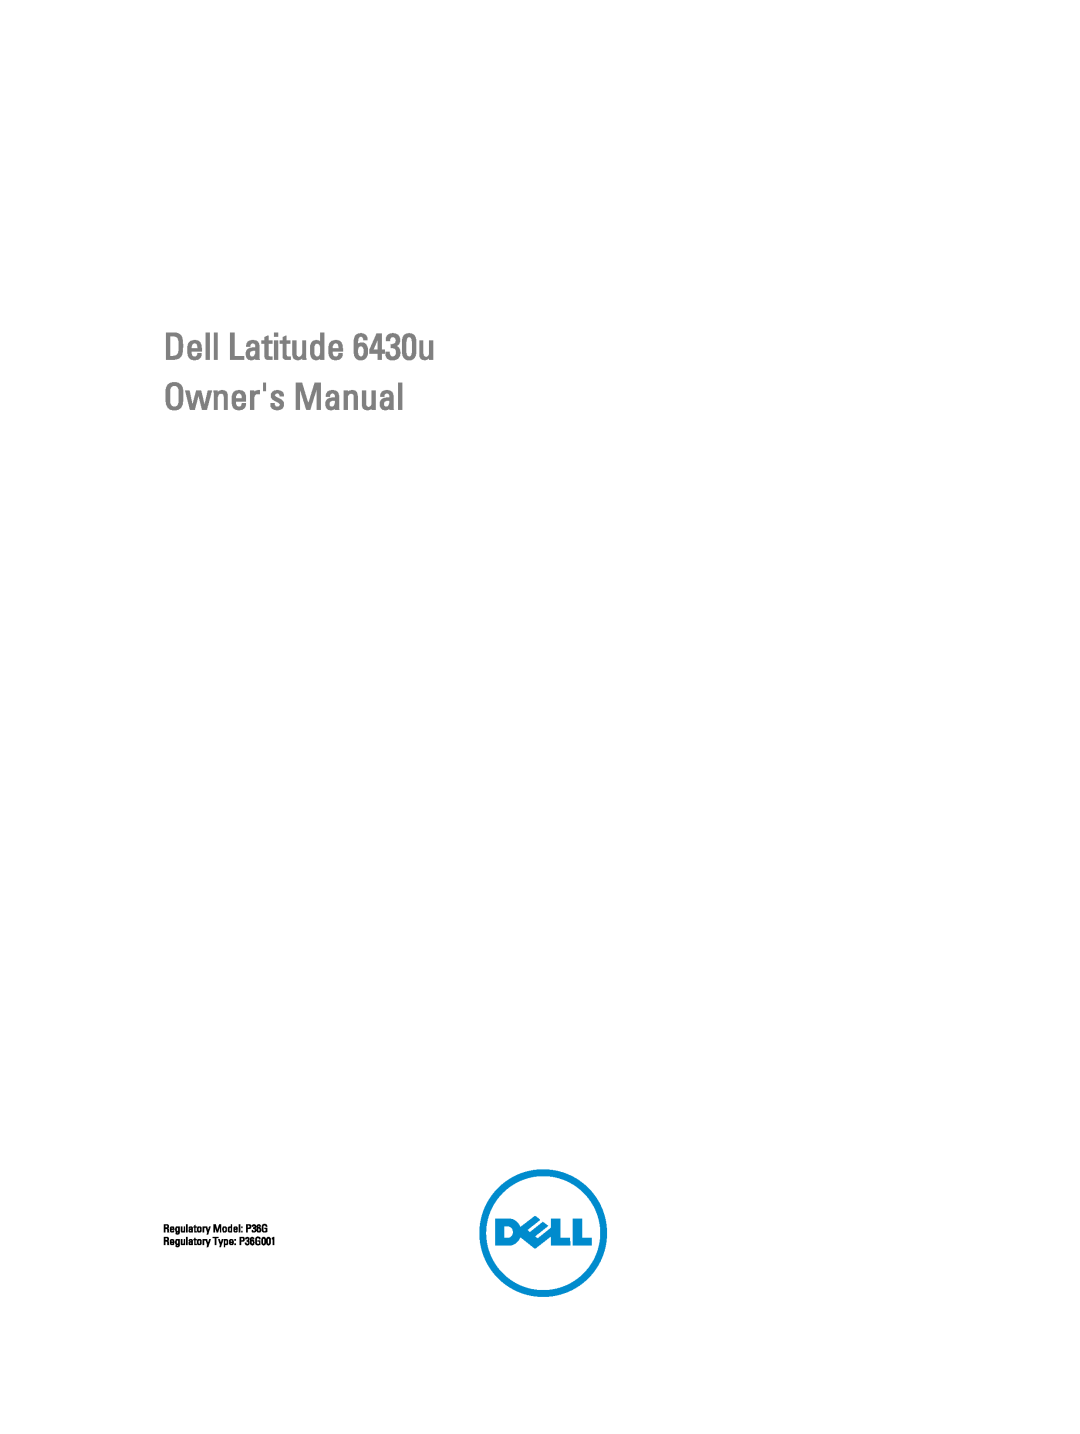 Dell 6430U owner manual Dell Latitude 6430u Owners Manual, Regulatory Model P36G Regulatory Type P36G001 